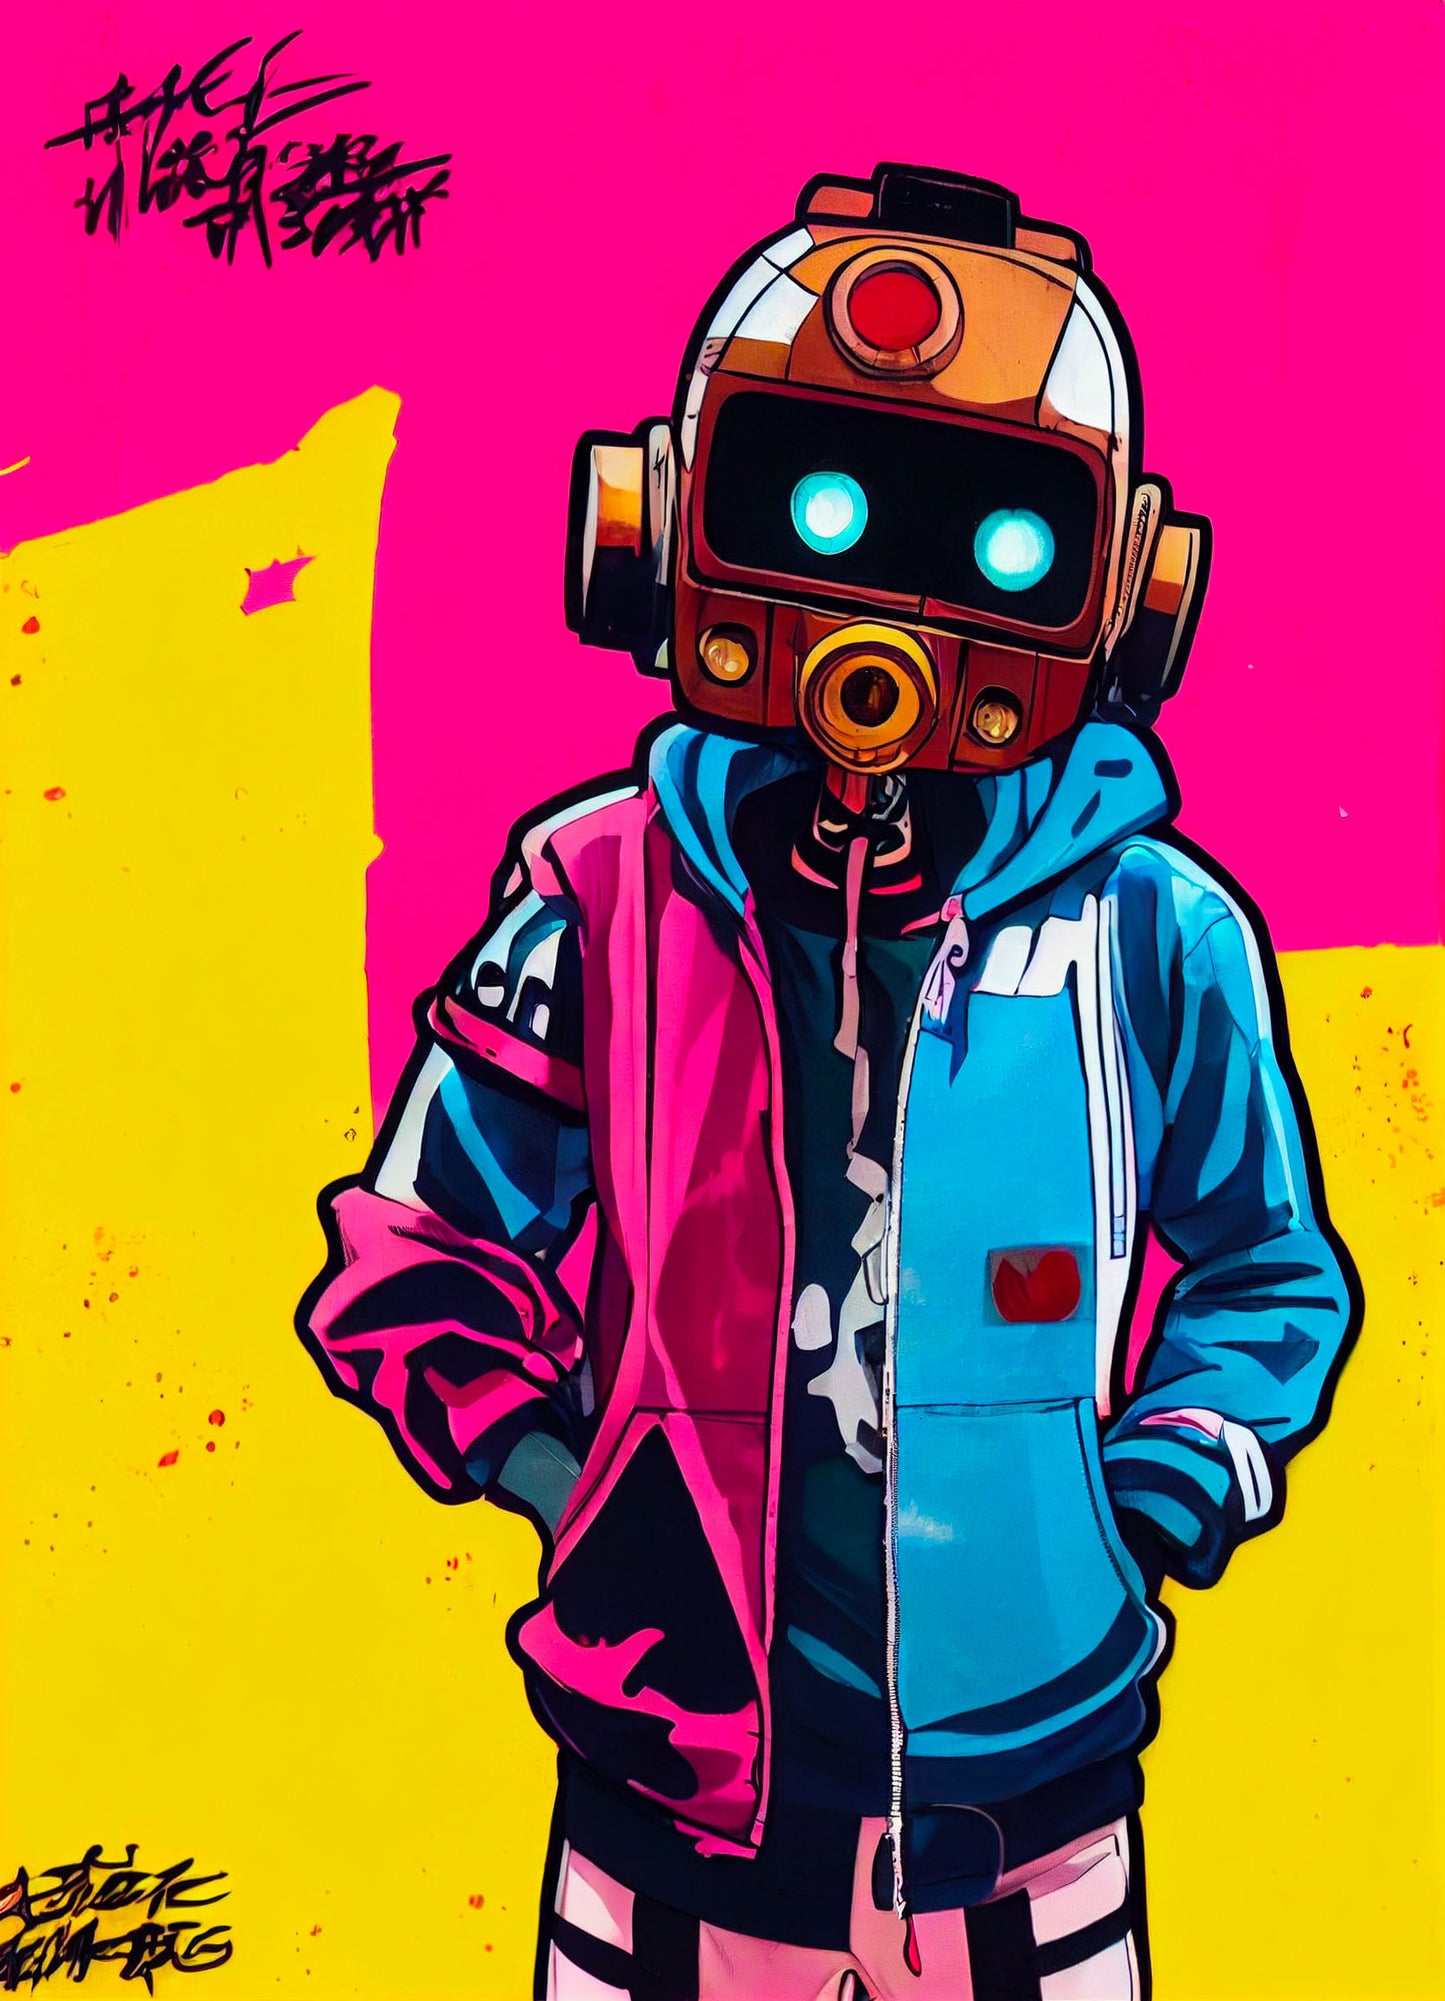 un tableau street art coloré avec un robot old school